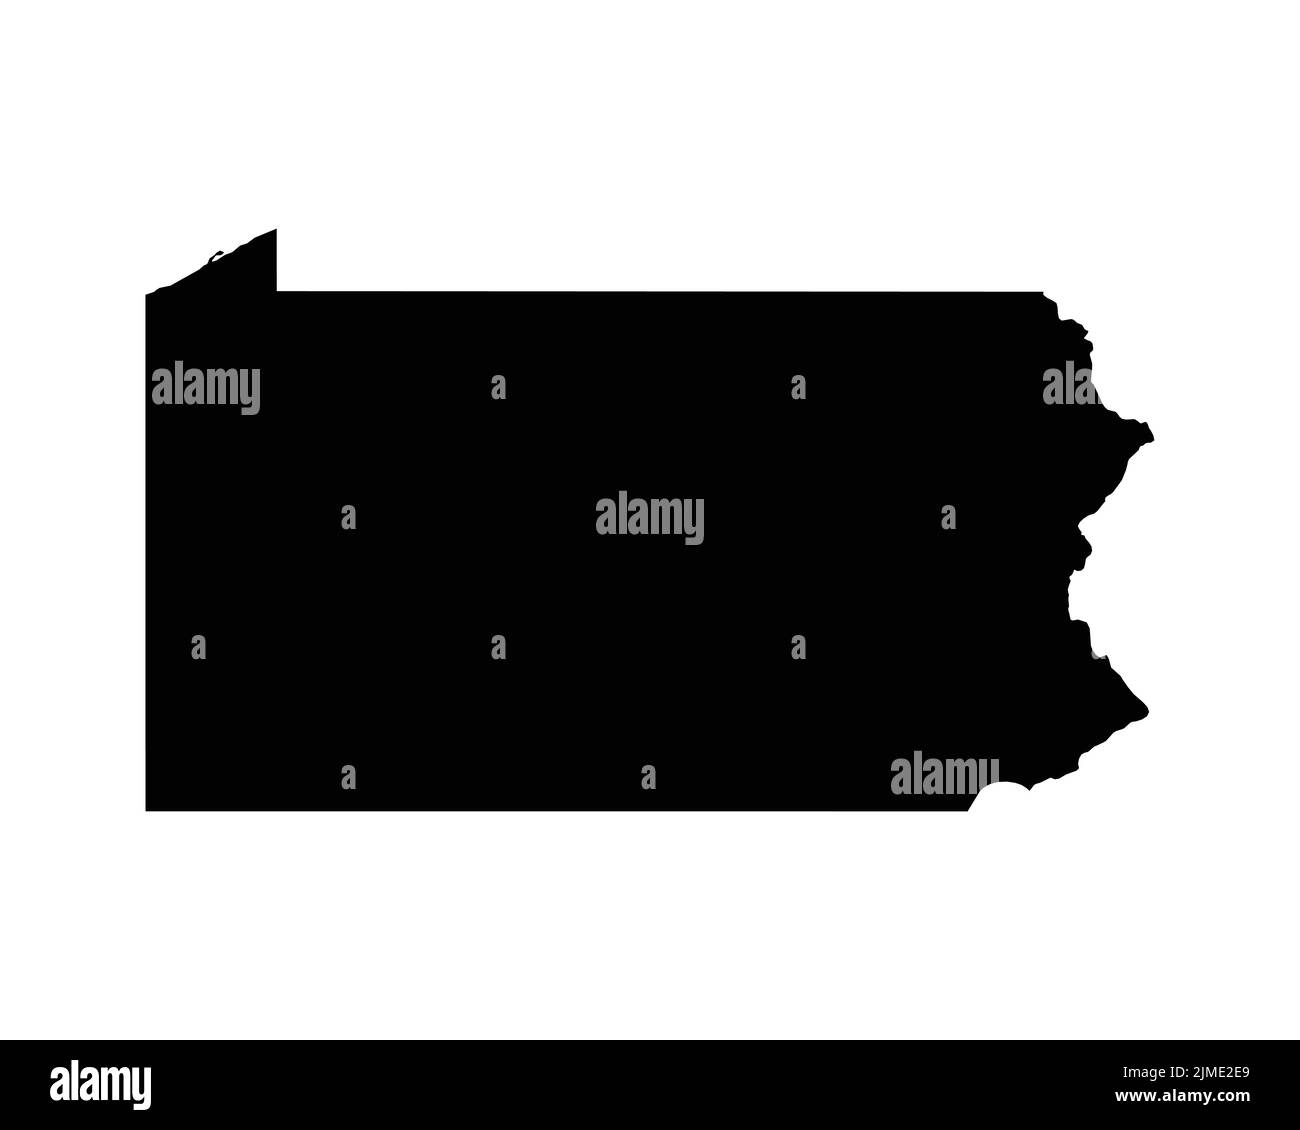 US-Karte von Pennsylvania. PA USA State Map. Schwarz-Weiß-Grenze des Staates Pennsylvania Grenzlinie Umriss Geographie Territorialform Vektor Illustration Stock Vektor